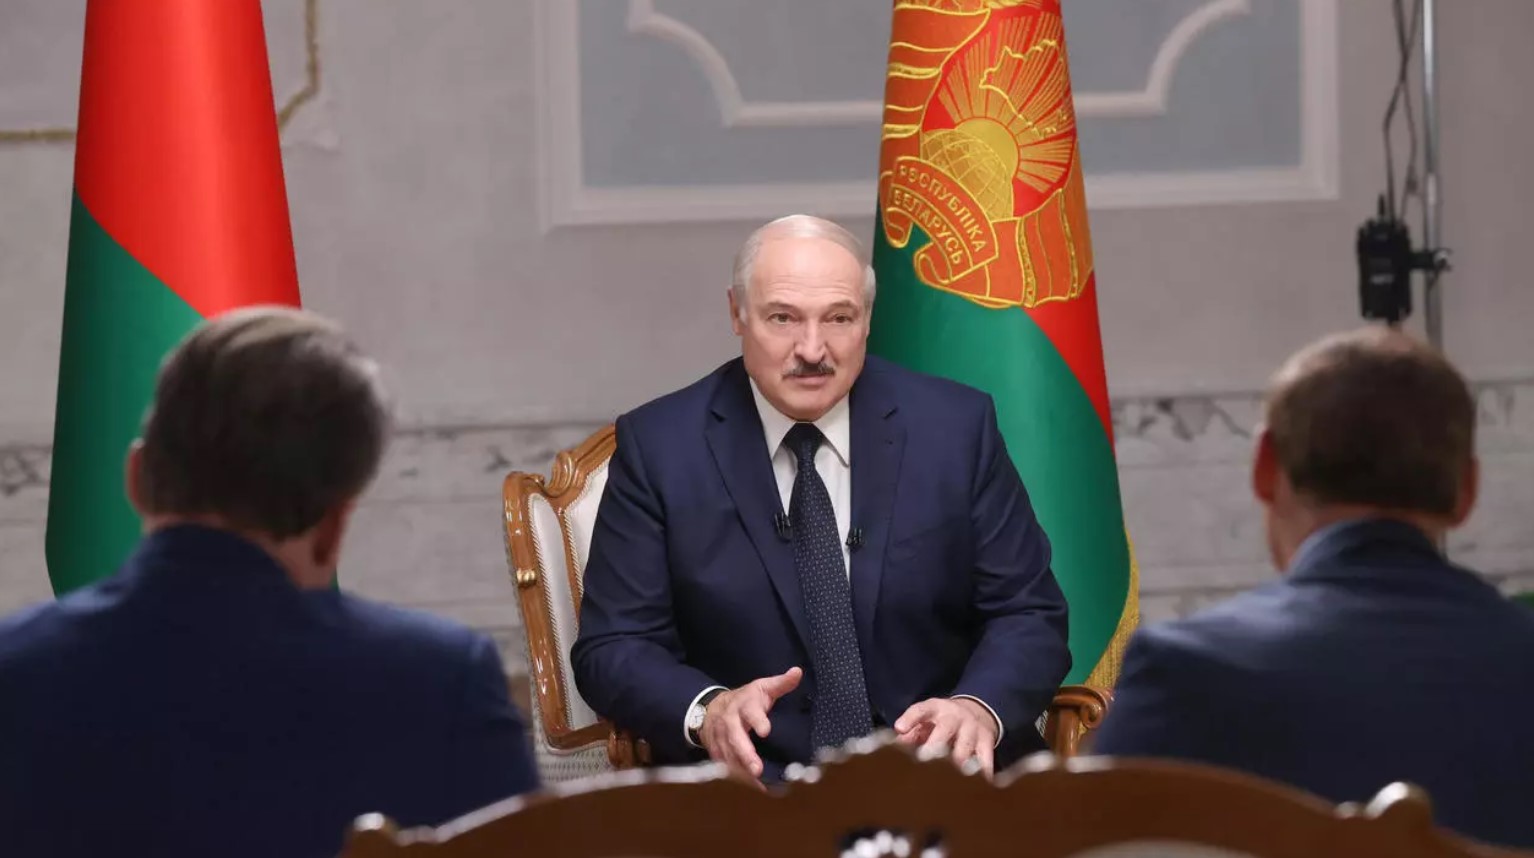 Премьер Польши представил план для Беларуси после Лукашенко